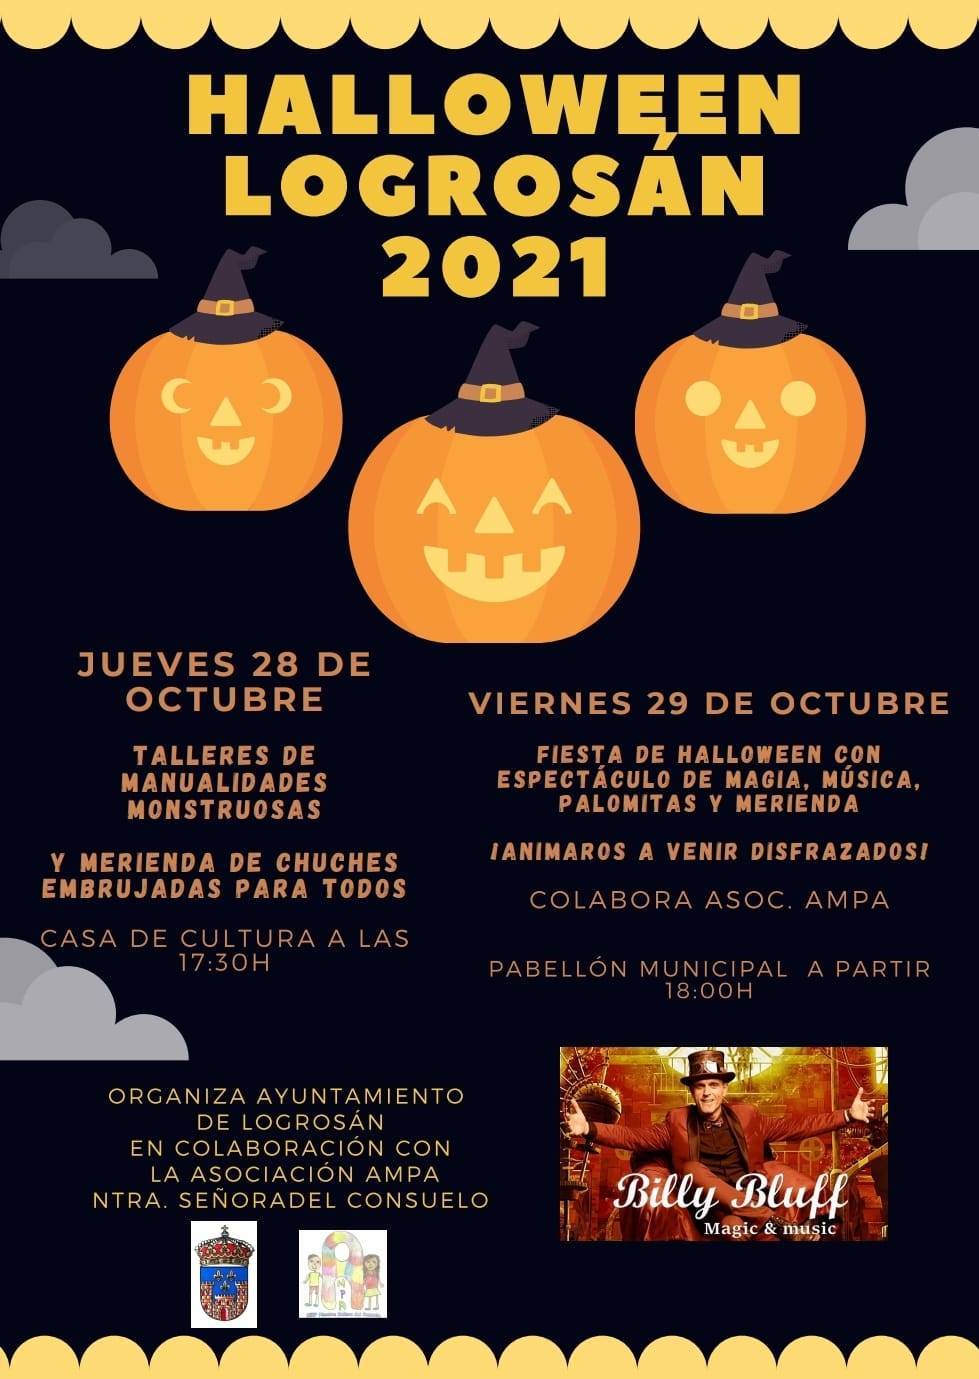 Halloween (2021) - Logrosán (Cáceres)